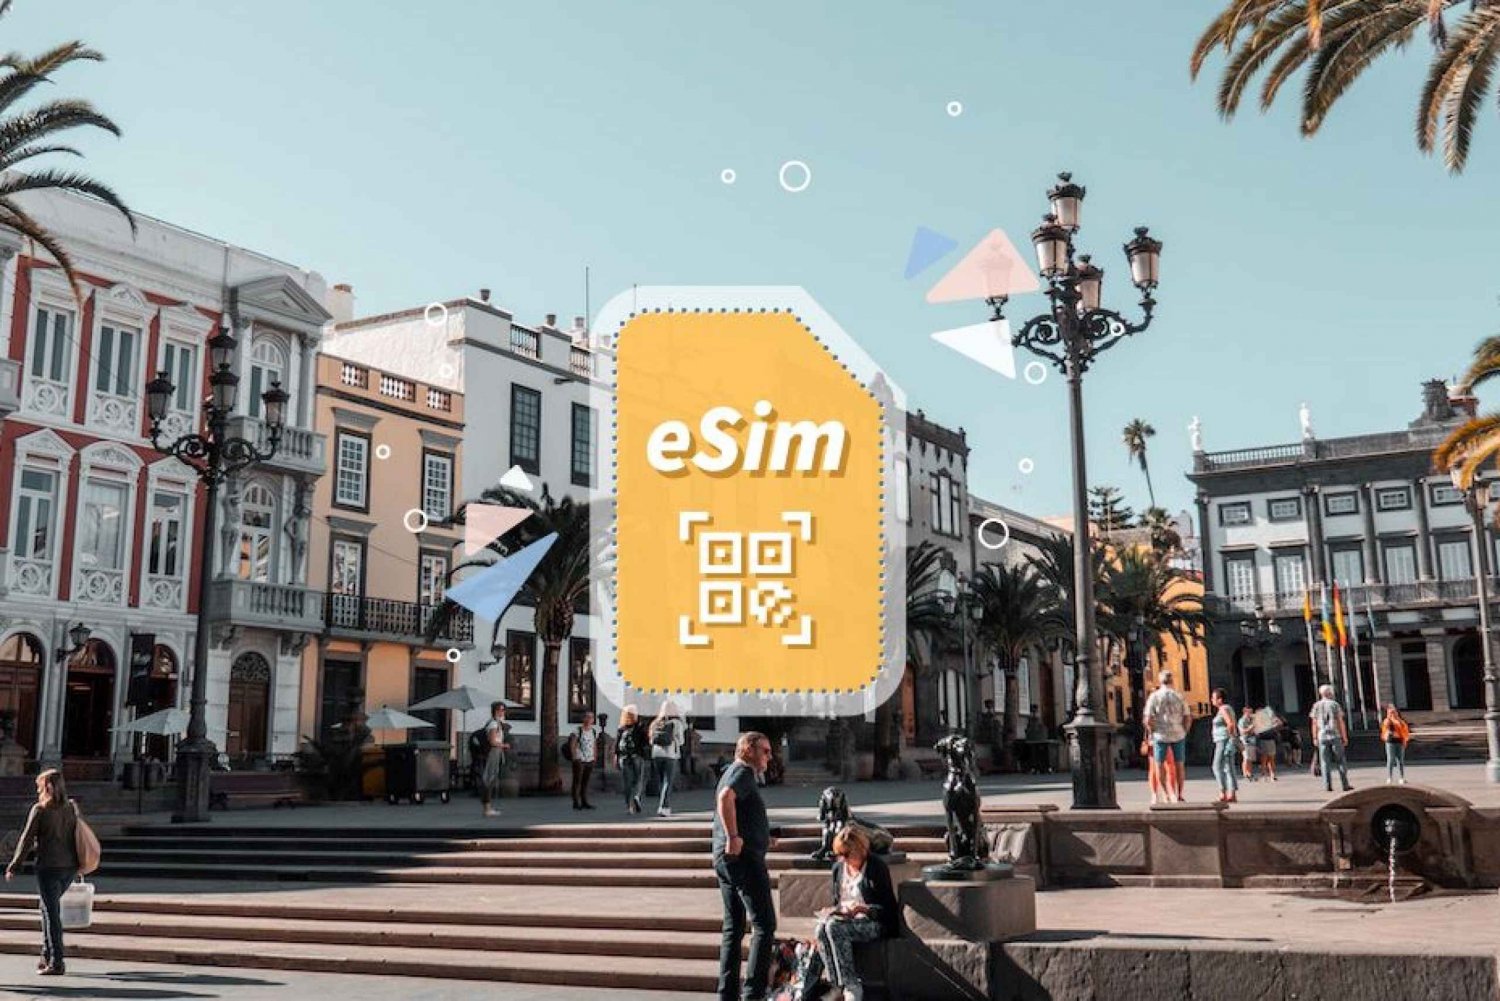 Spania/Europa: eSim Mobile Data Plan